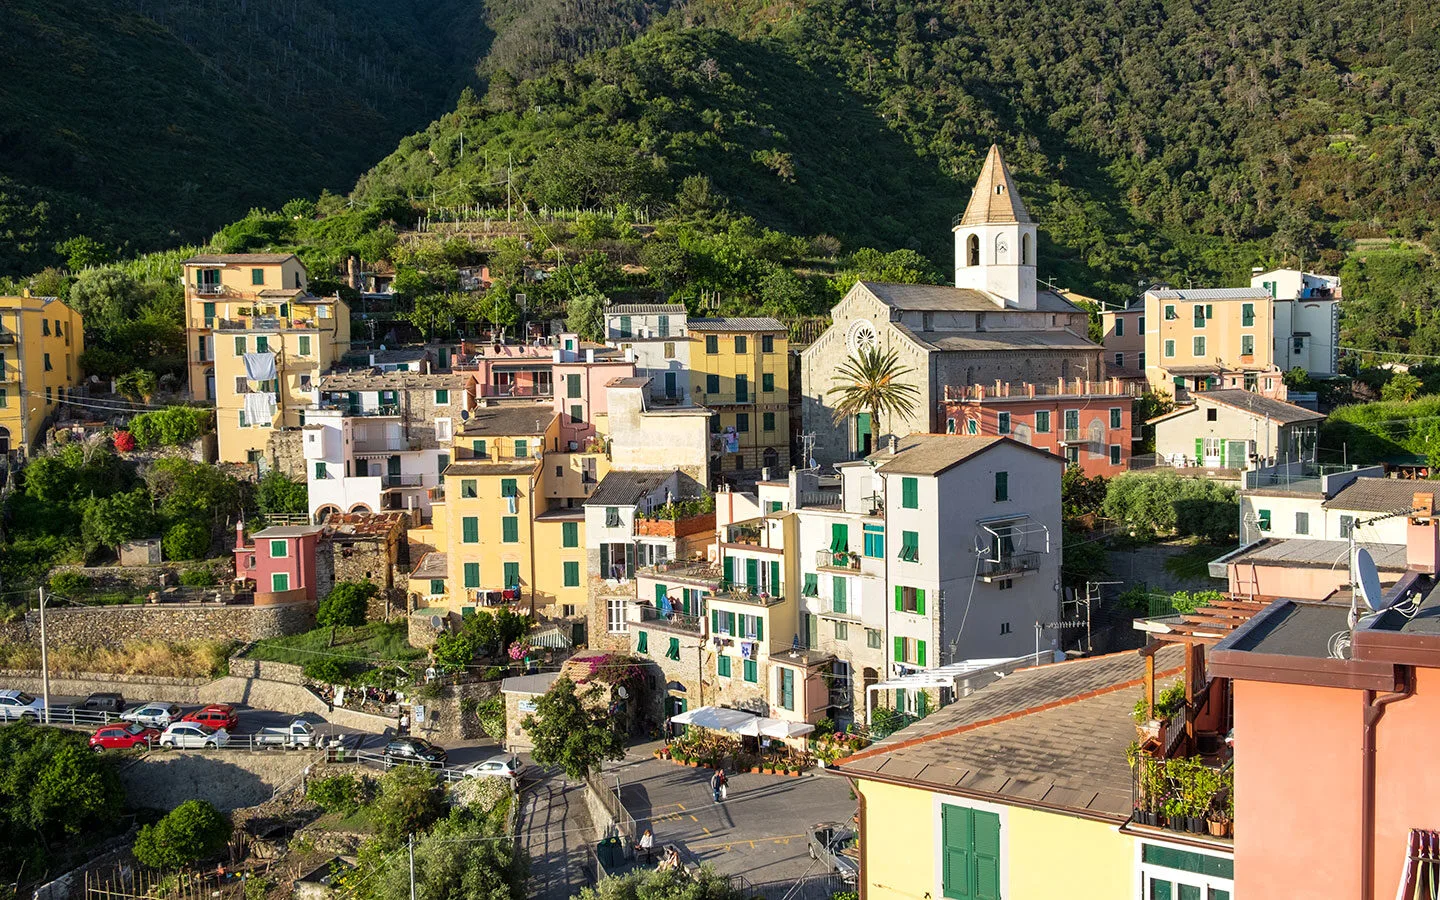 The village of Corniglia in the Cinque Terre, Italy